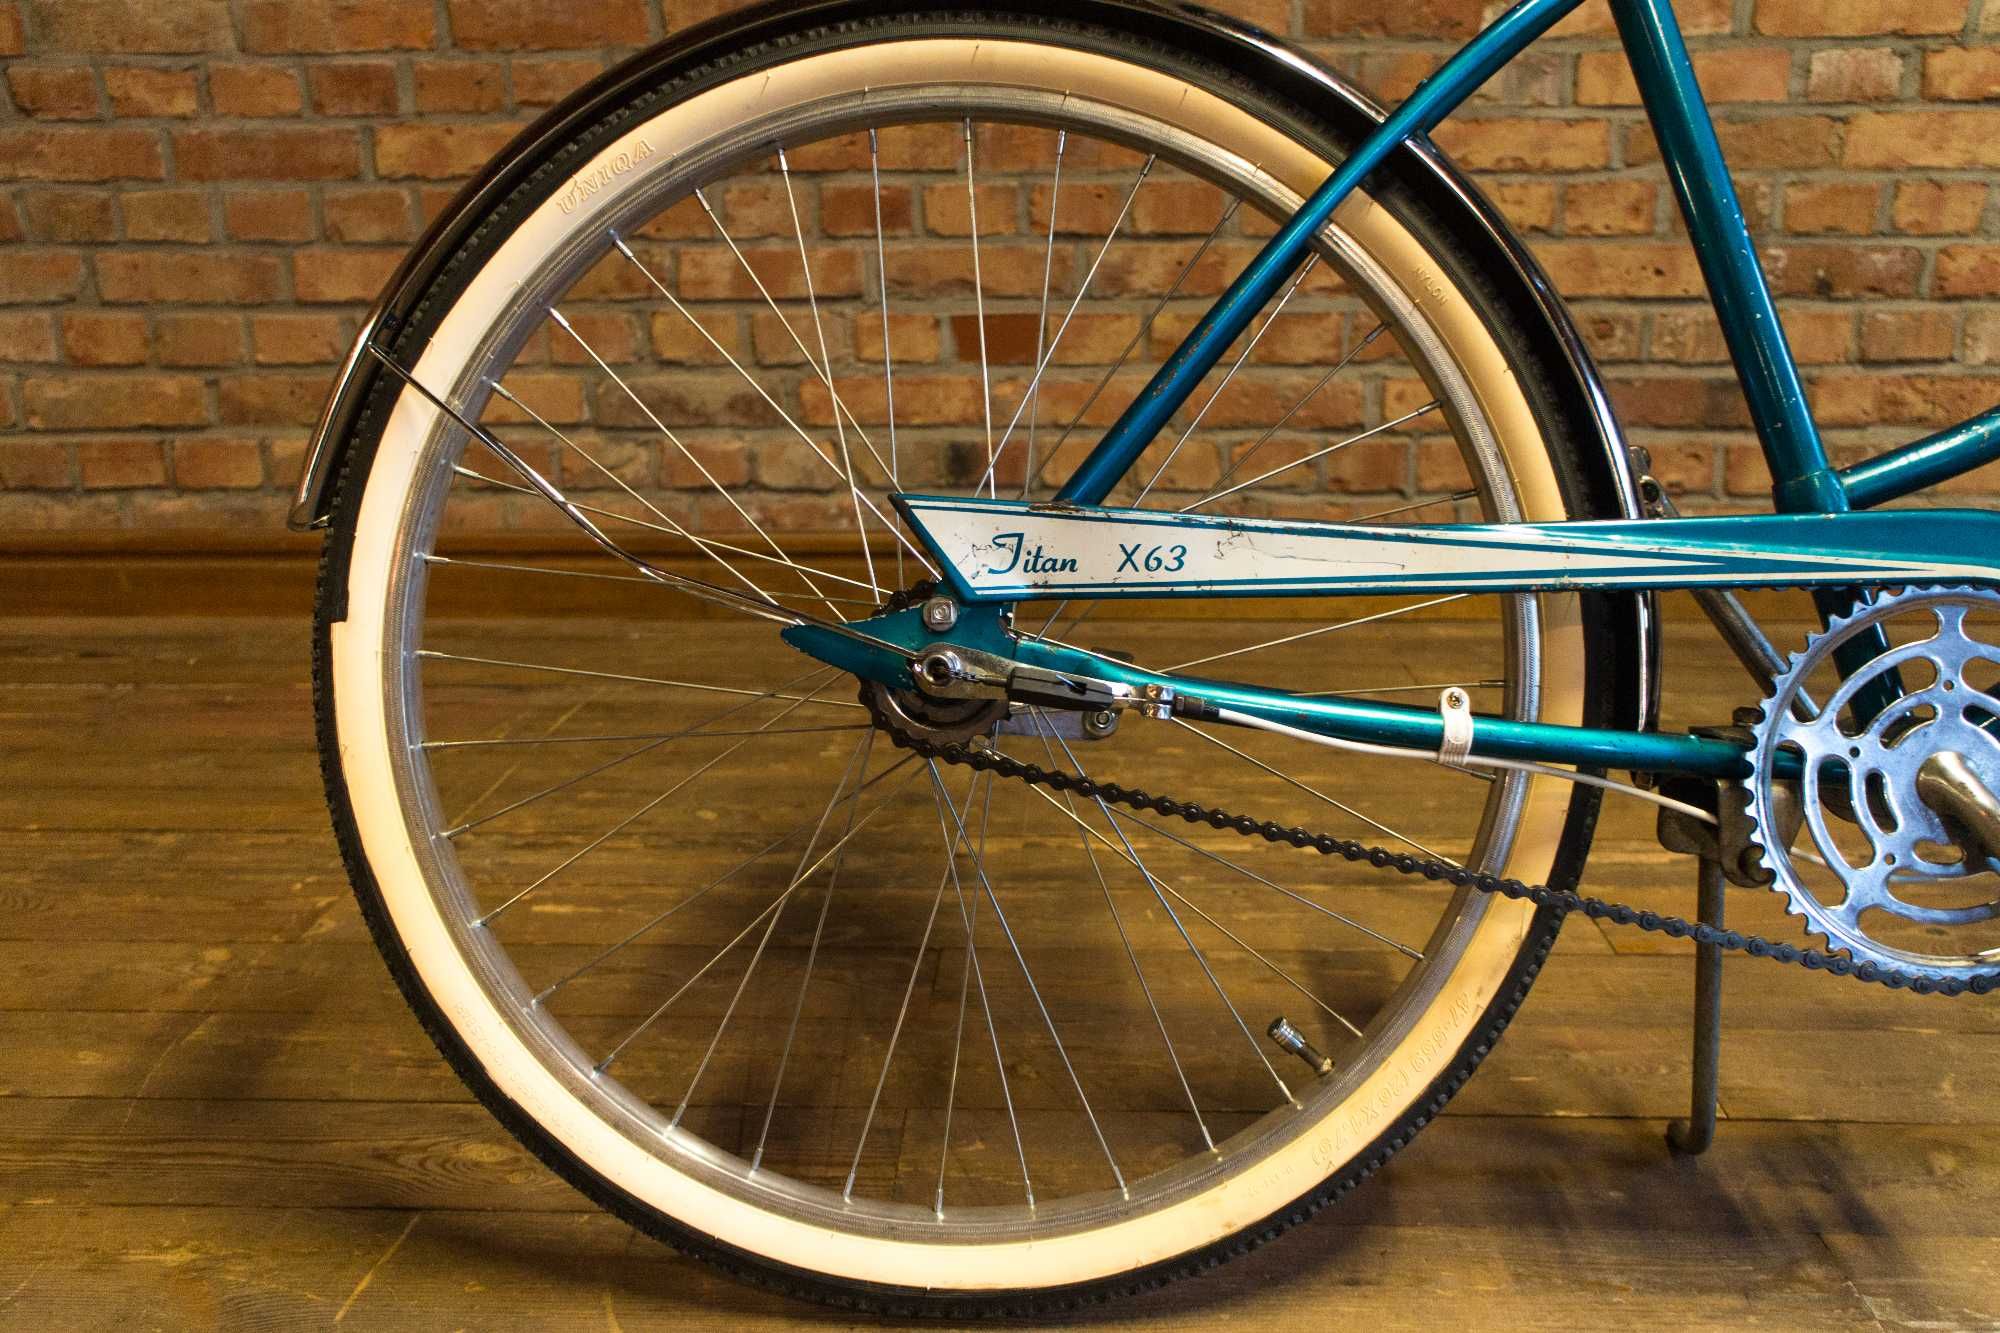 Zabytkowy rower Murray Titan X63 (Vintage, Retro, 1963)